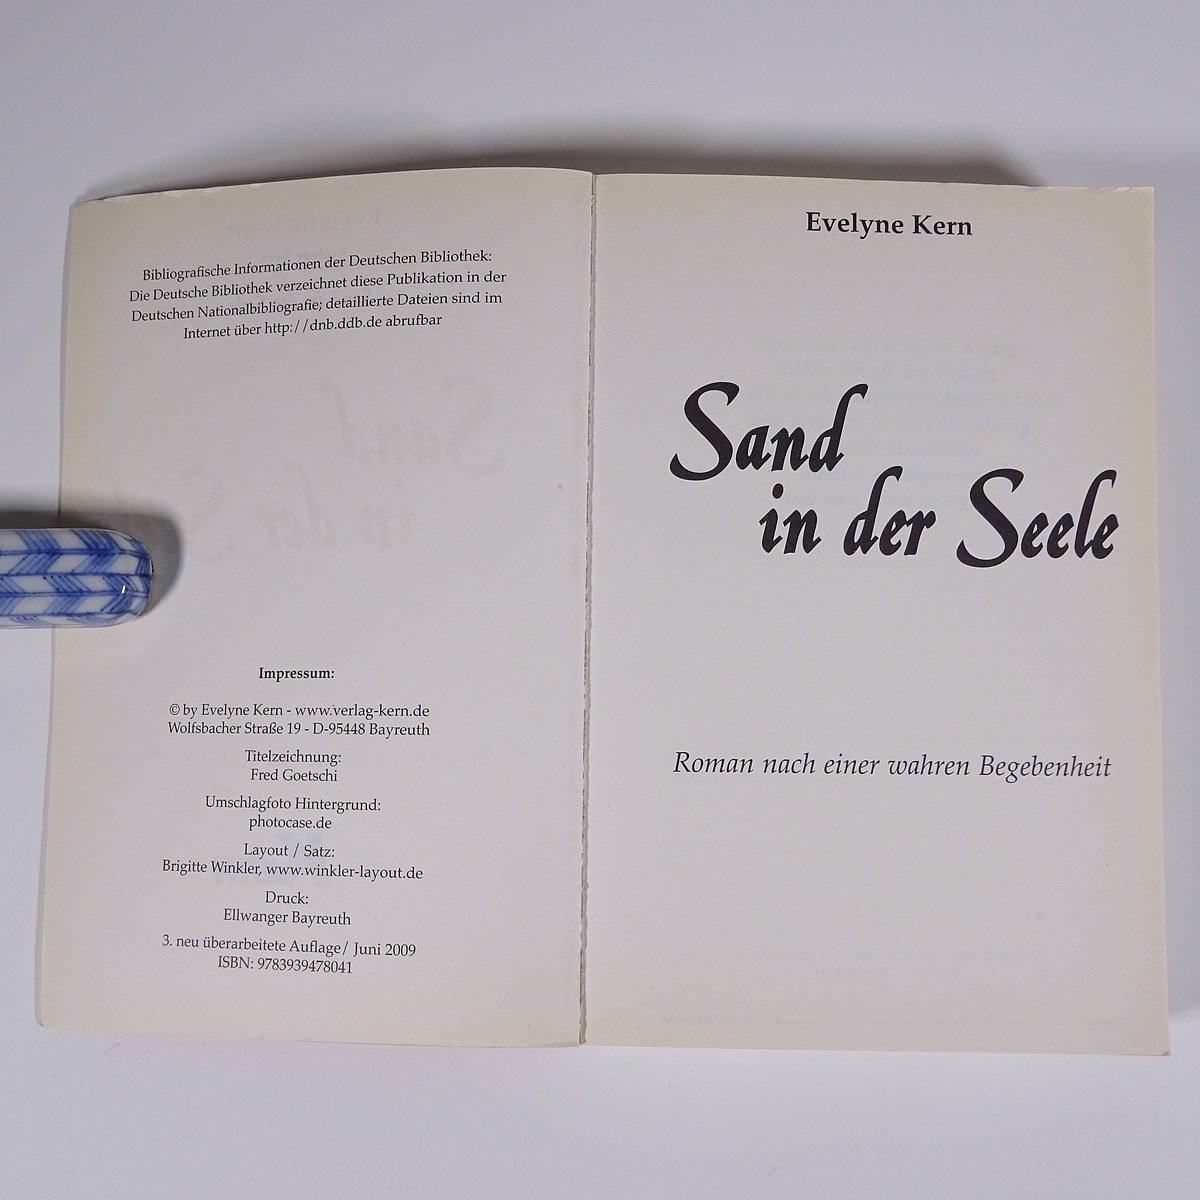 【ドイツ語洋書】 Sand in der Seele 魂の中の砂 Evelyne Kern エヴリン・カーン著 2009 単行本 ペーパーバック 文学 文芸 海外小説_画像5